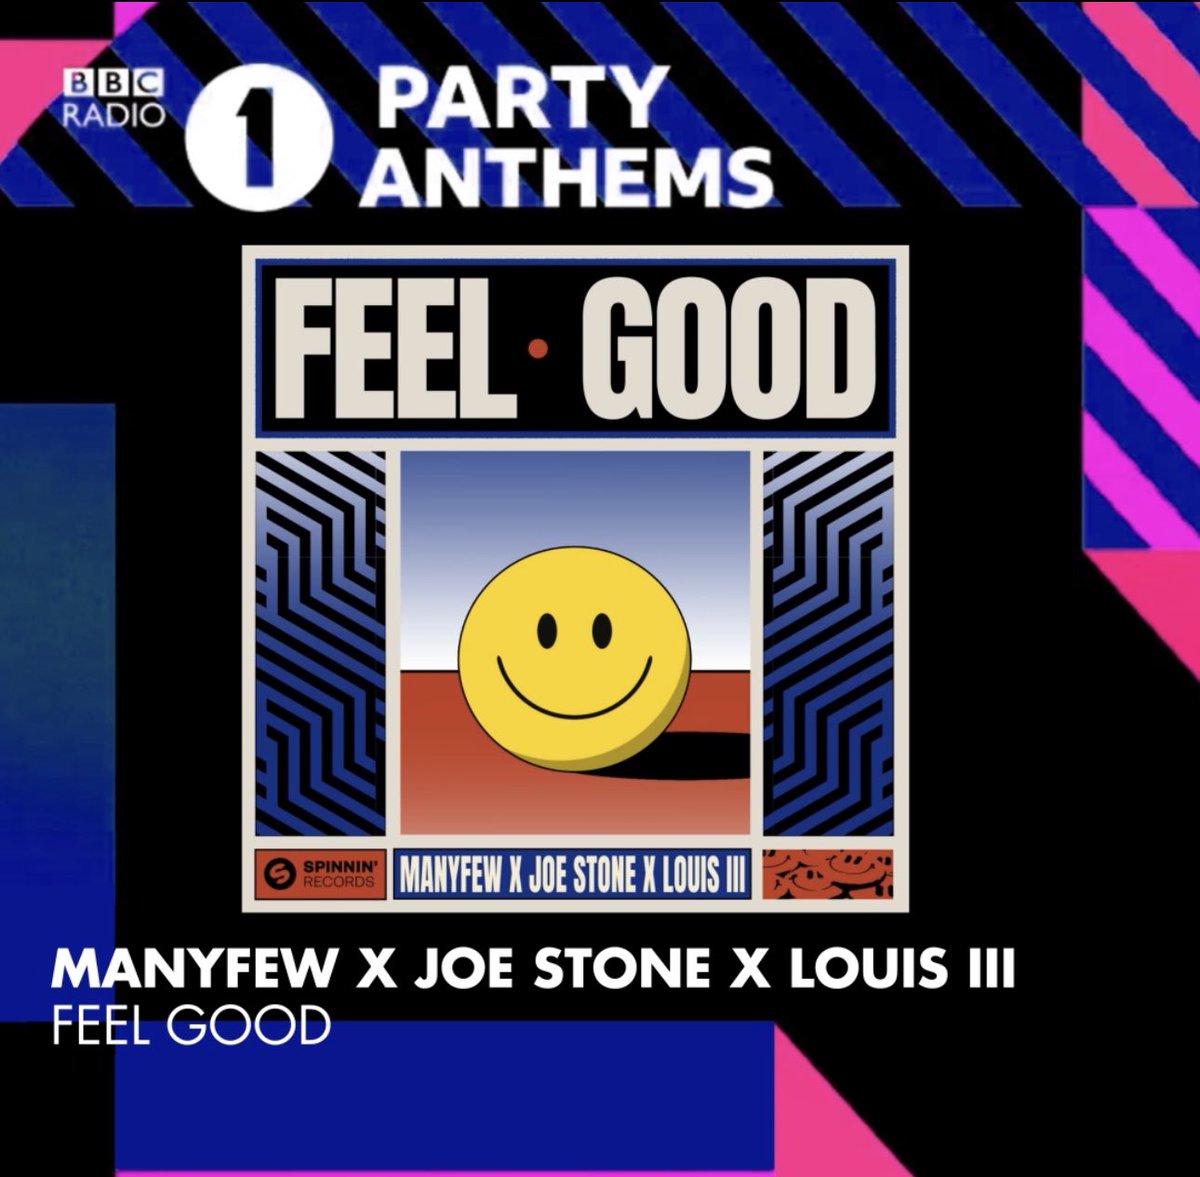 Yay ‘Feel Good’ is on air @BBCR1 🙌🏼🙌🏼 #manyfew #feelgood #weekendmood